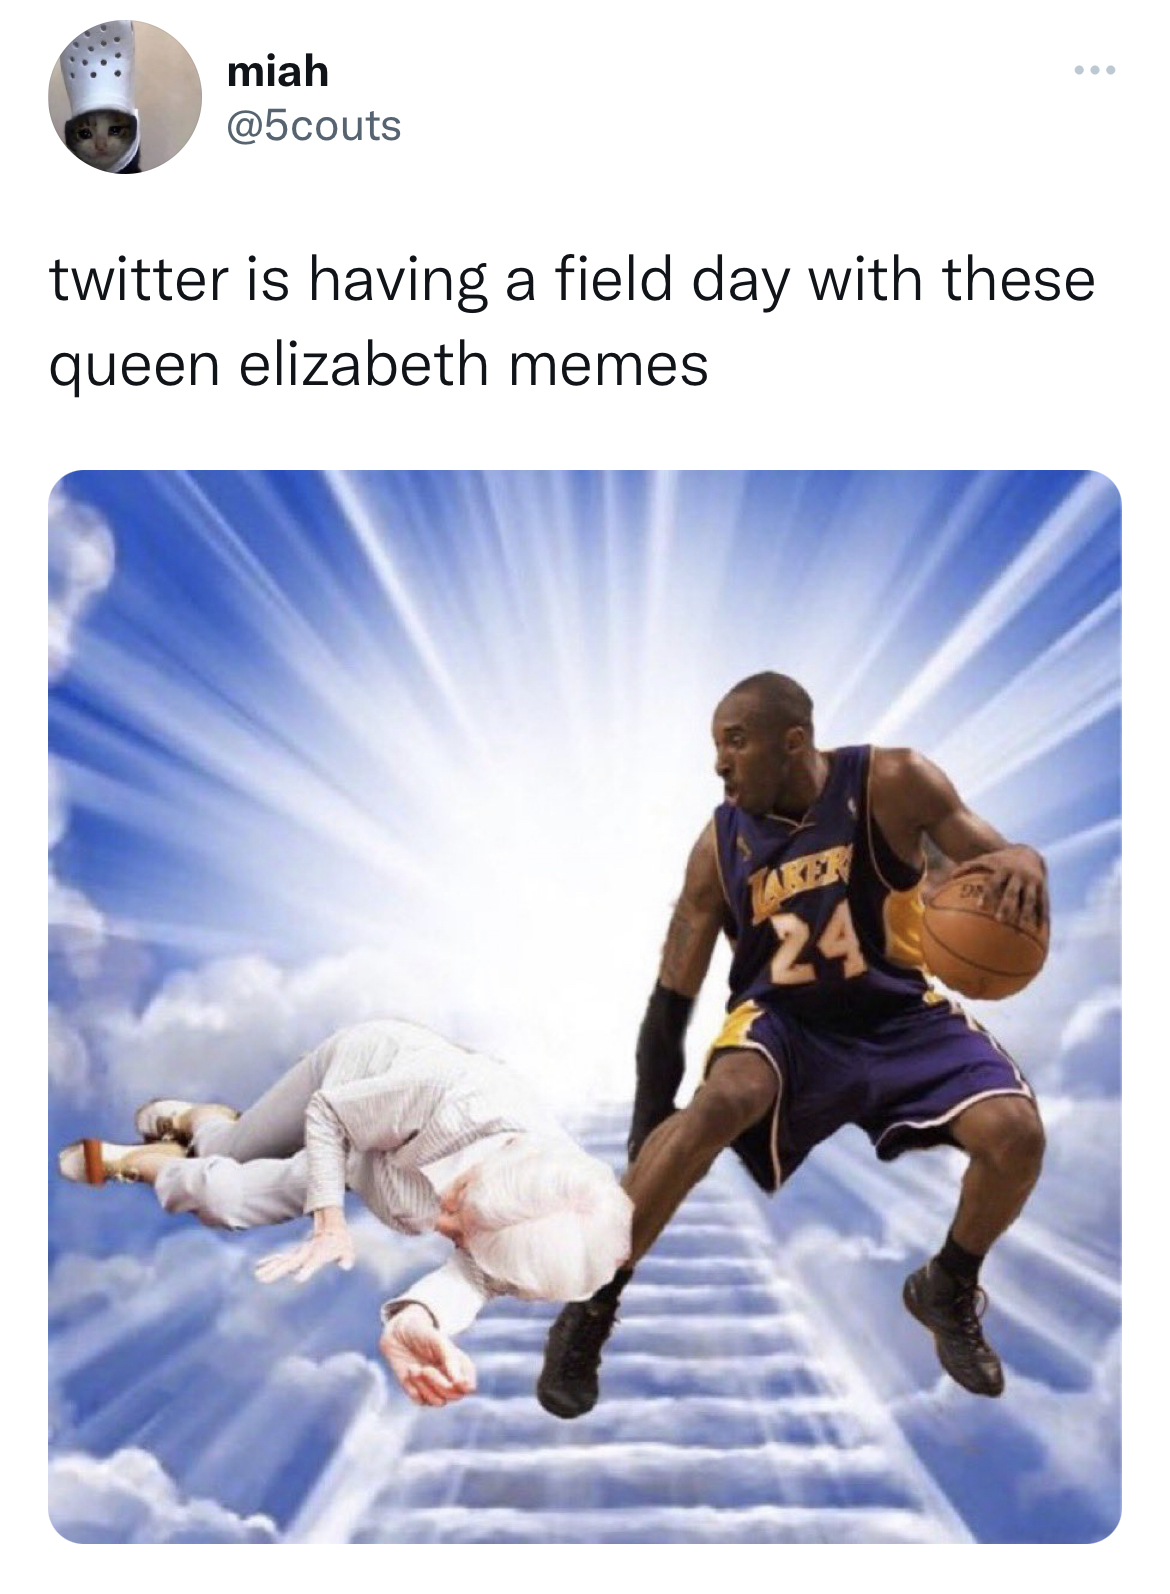 Queen Elizabeth II Death Reactions - nba 壁紙 - miah # twitter is having a field day with these queen elizabeth memes Taker 24